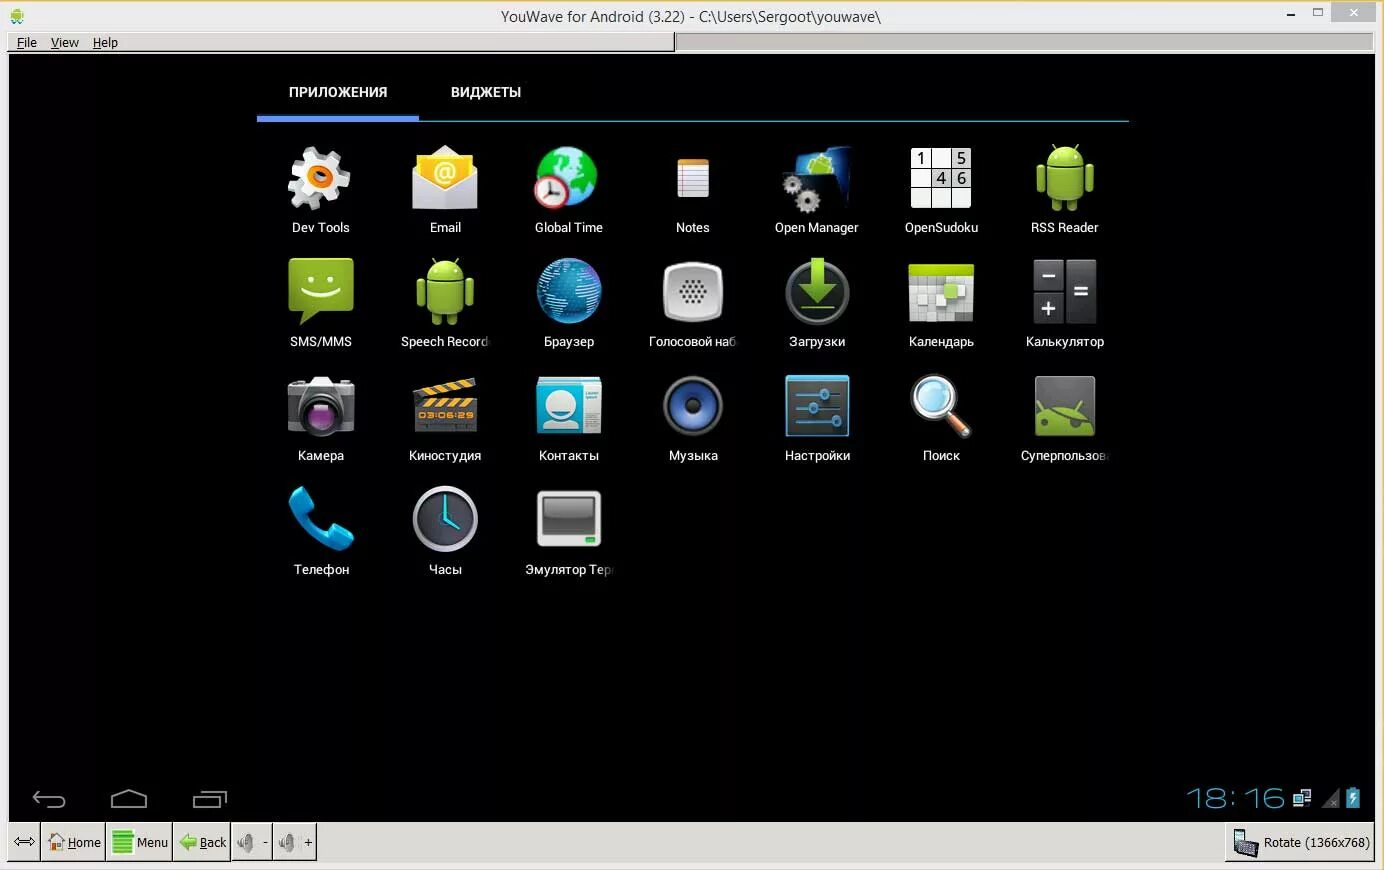 Эмулятор андроид 4.4.2 на андроид. Android 4.0 эмулятор. Эмулятор для запуска APK на компьютере. Android 5.0 эмулятор. Легкий андроид на пк